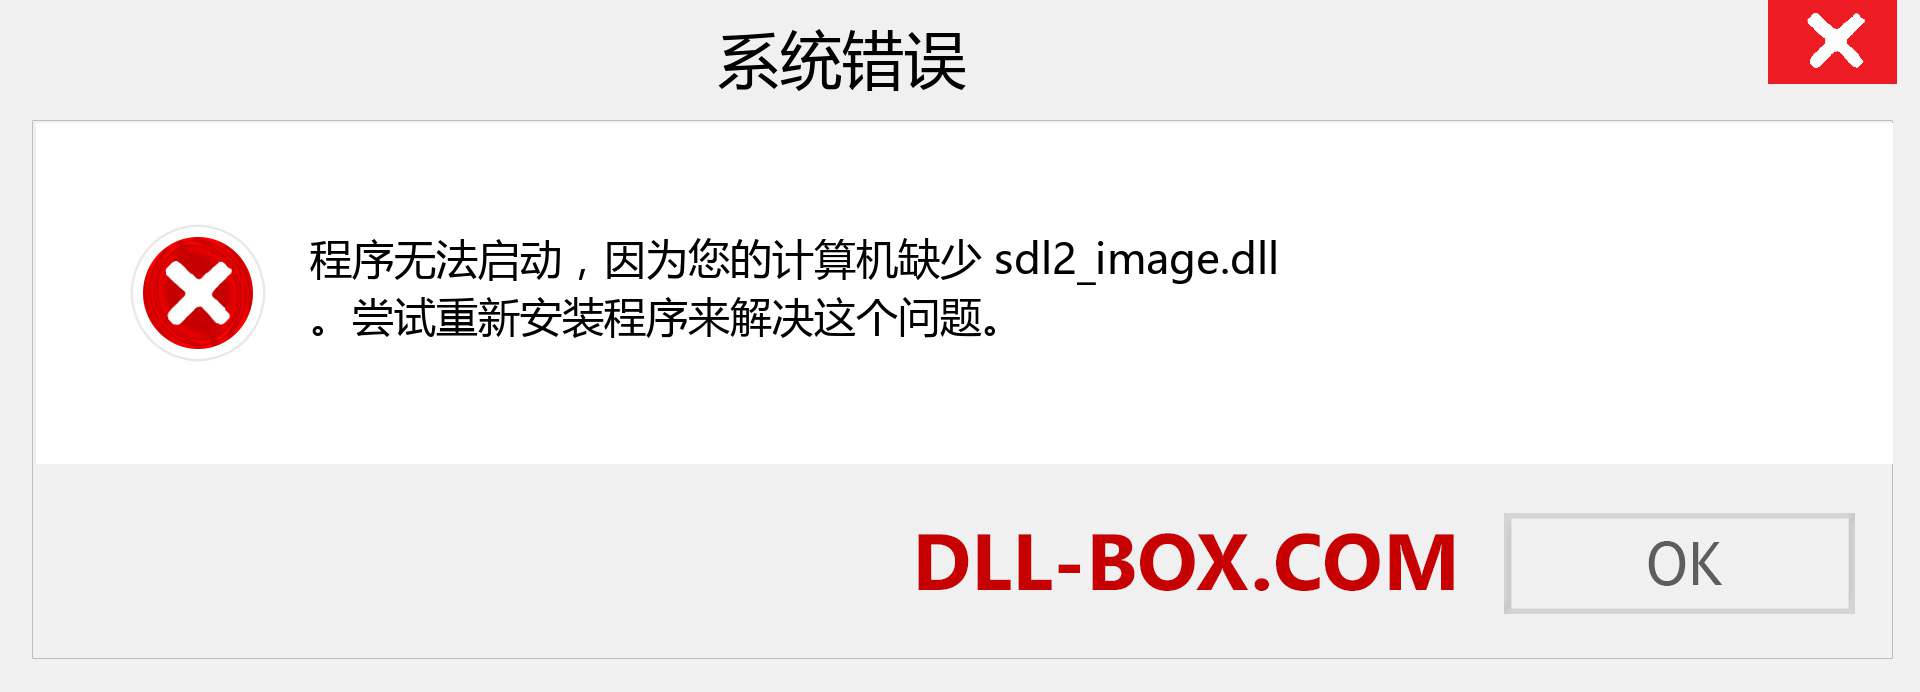 sdl2_image.dll 文件丢失？。 适用于 Windows 7、8、10 的下载 - 修复 Windows、照片、图像上的 sdl2_image dll 丢失错误